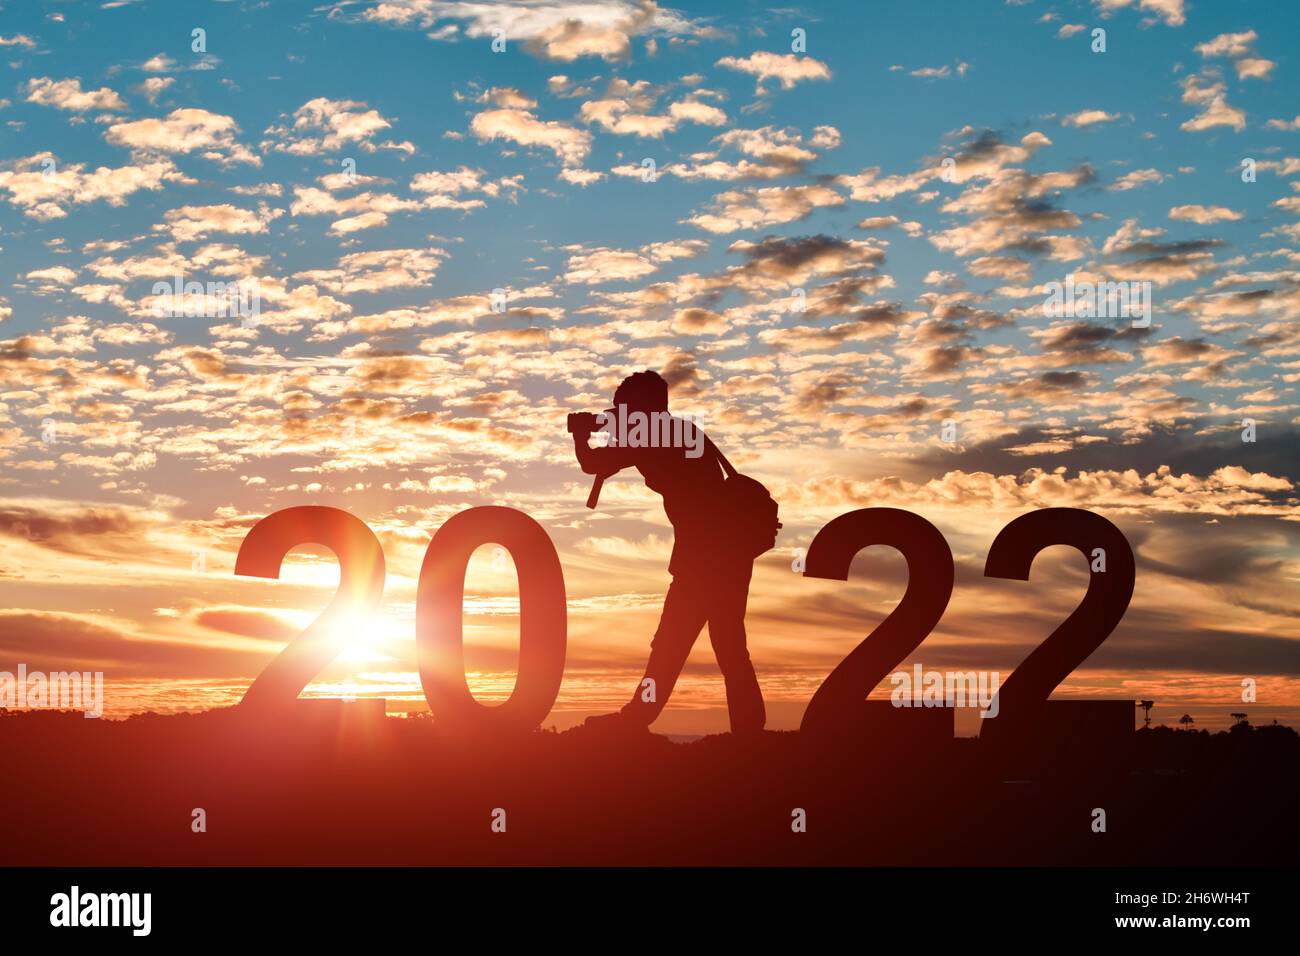 Silhouette de photographe prenant des photos en 2022 ans au lever ou au coucher du soleil.Idée pour une bonne année 2022. Banque D'Images